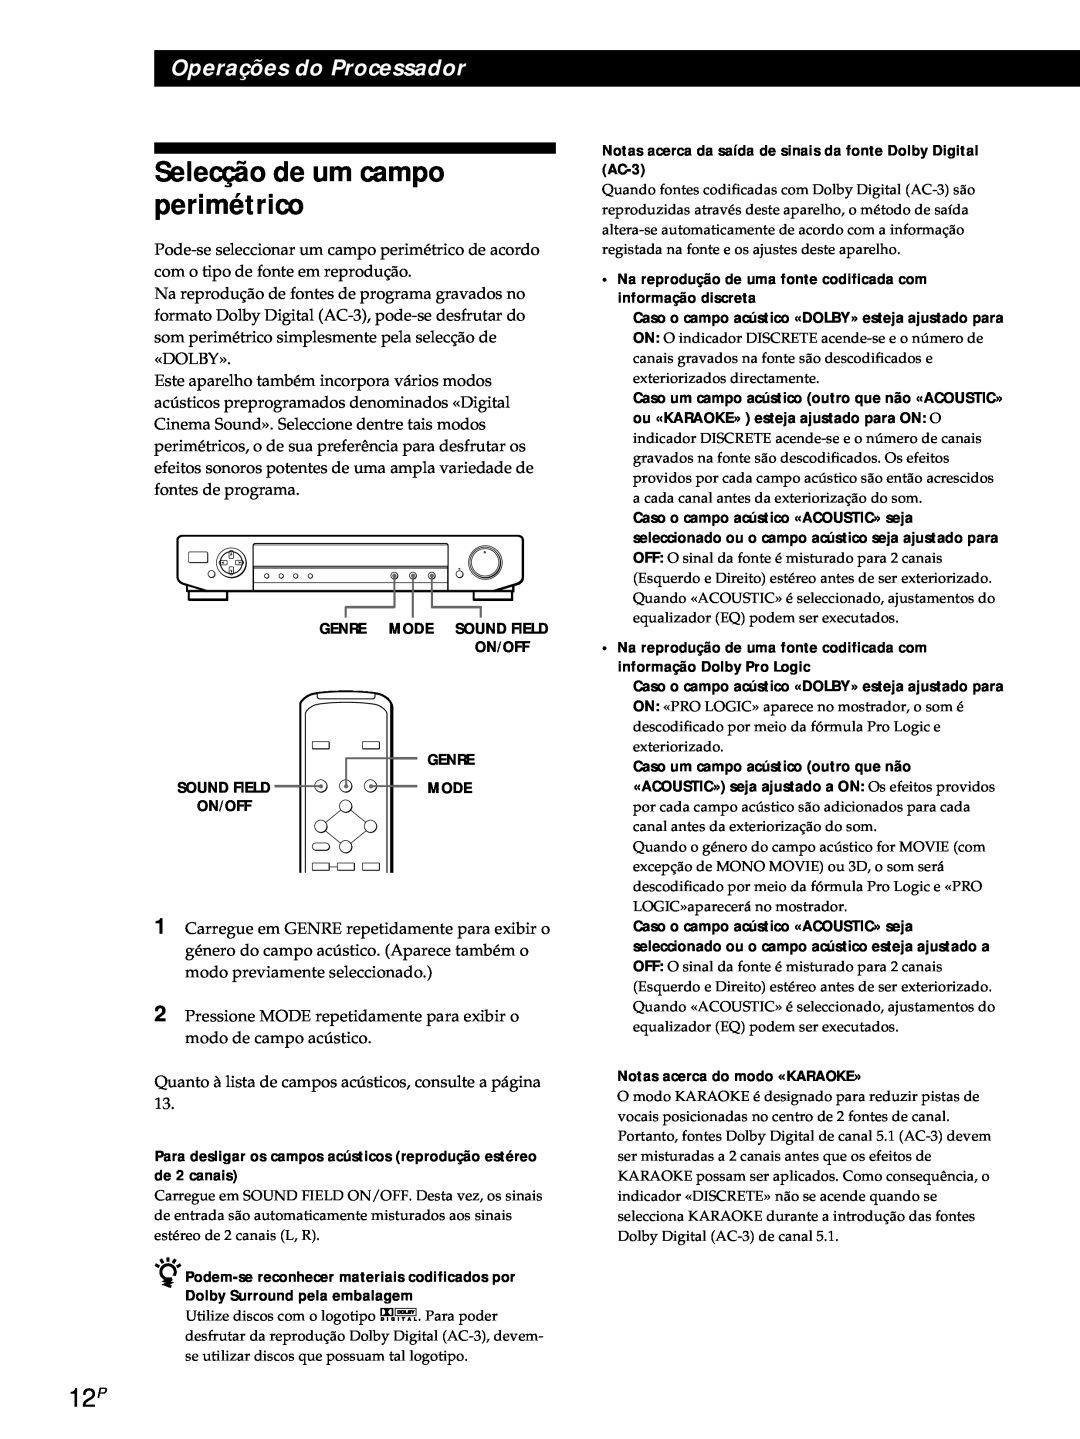 Sony SDP-E800 operating instructions Selecção de um campo perimétrico, Operações do Processador 